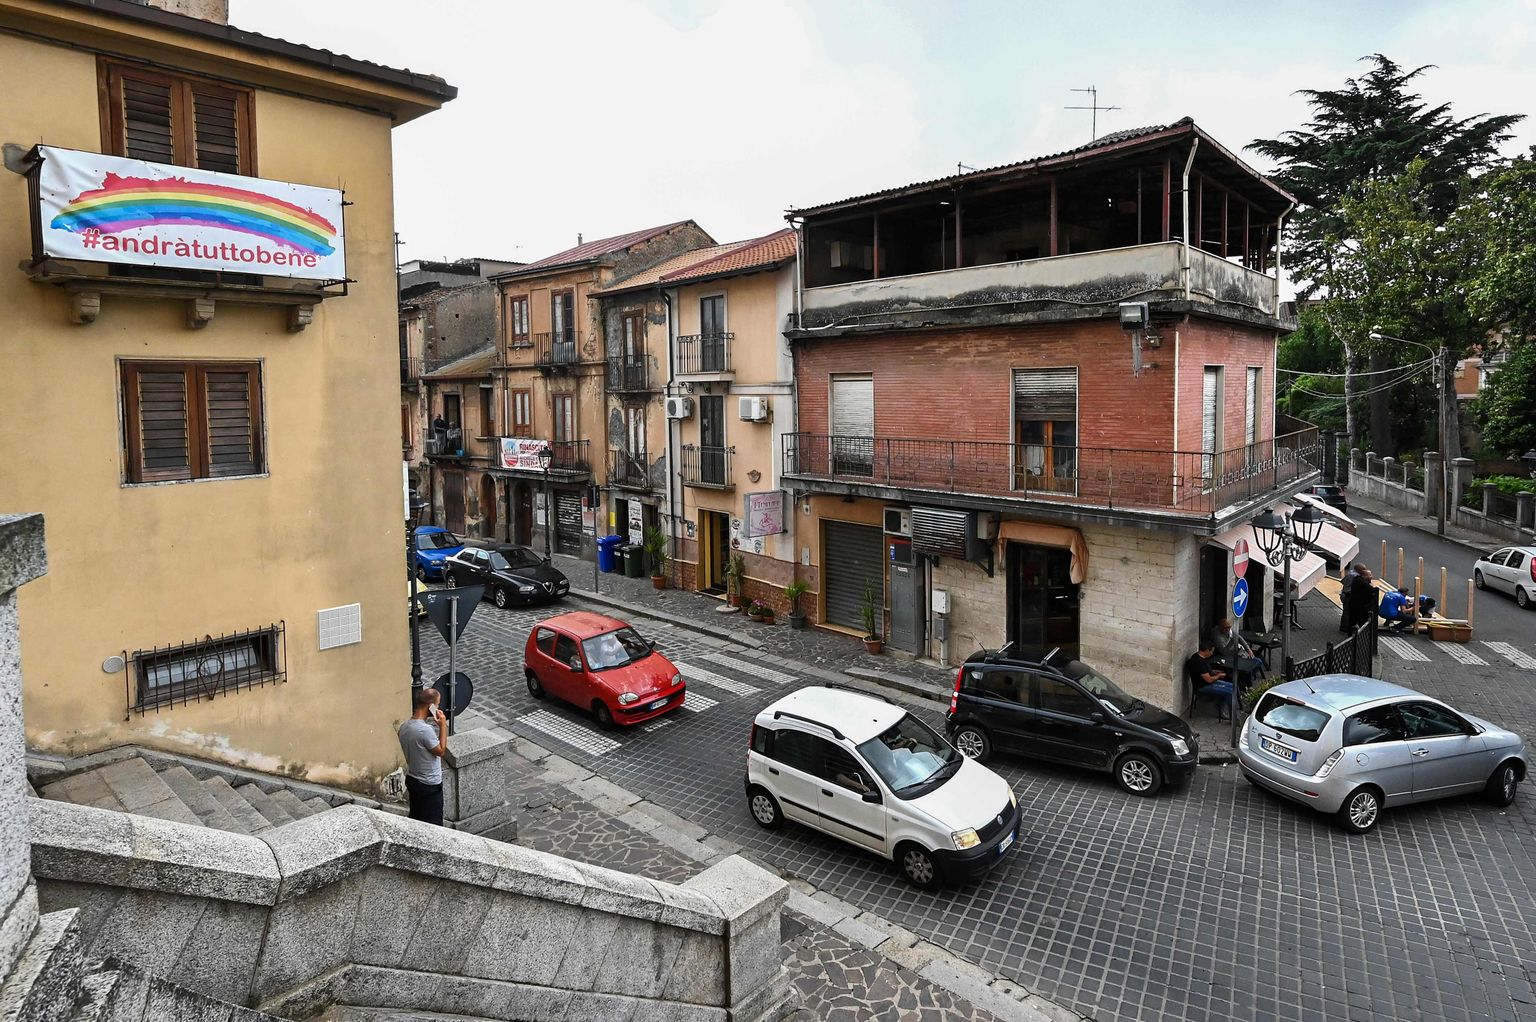 Cinquefrondi, Calabria. Tegu on ühe linnaga paljudest, kus 'Ndrangheta on aastakümnete vältel sisse imbunud.